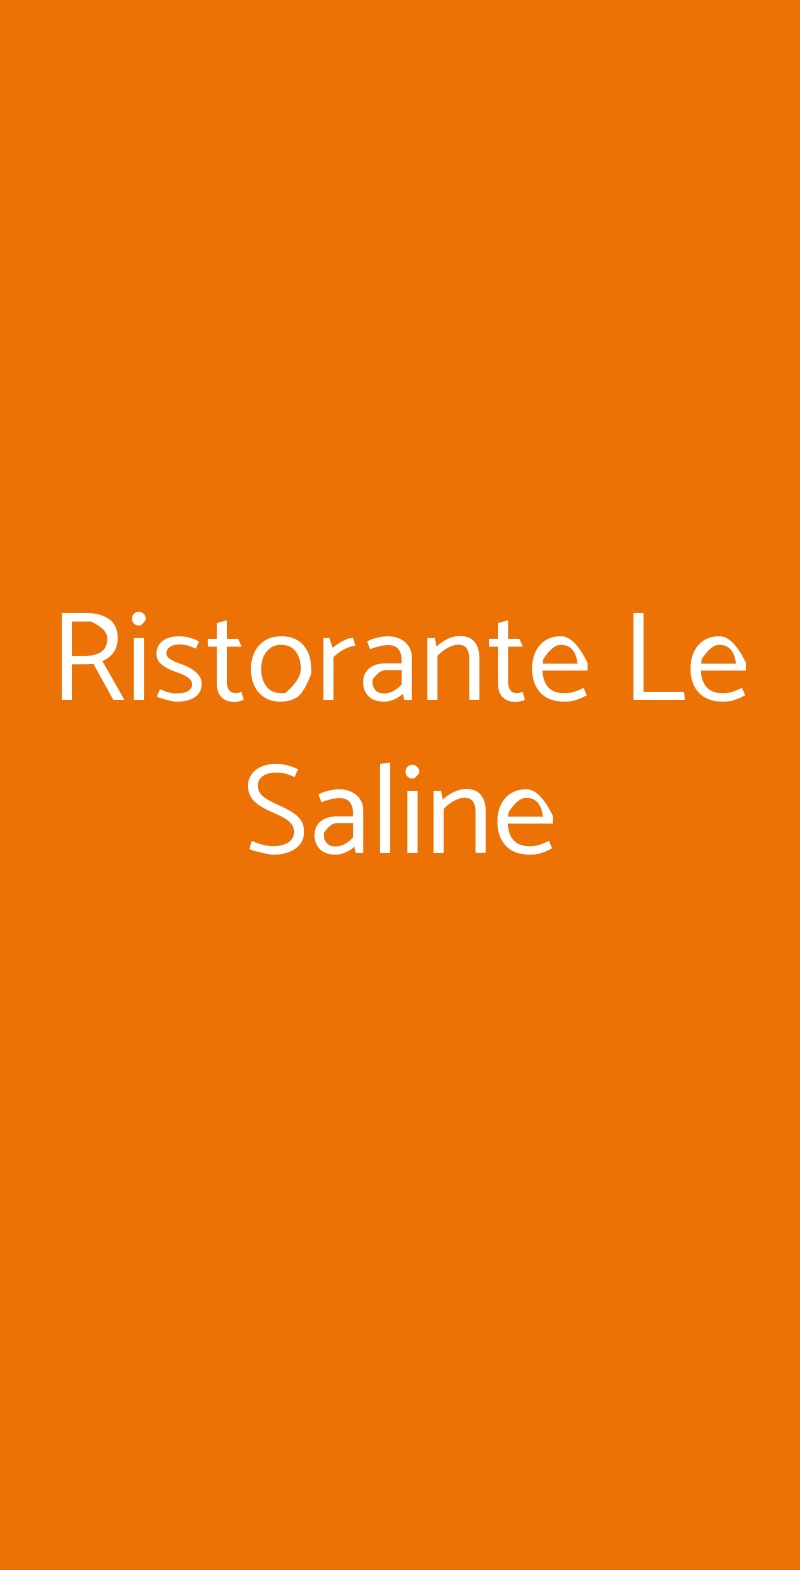 Ristorante Le Saline Milano menù 1 pagina